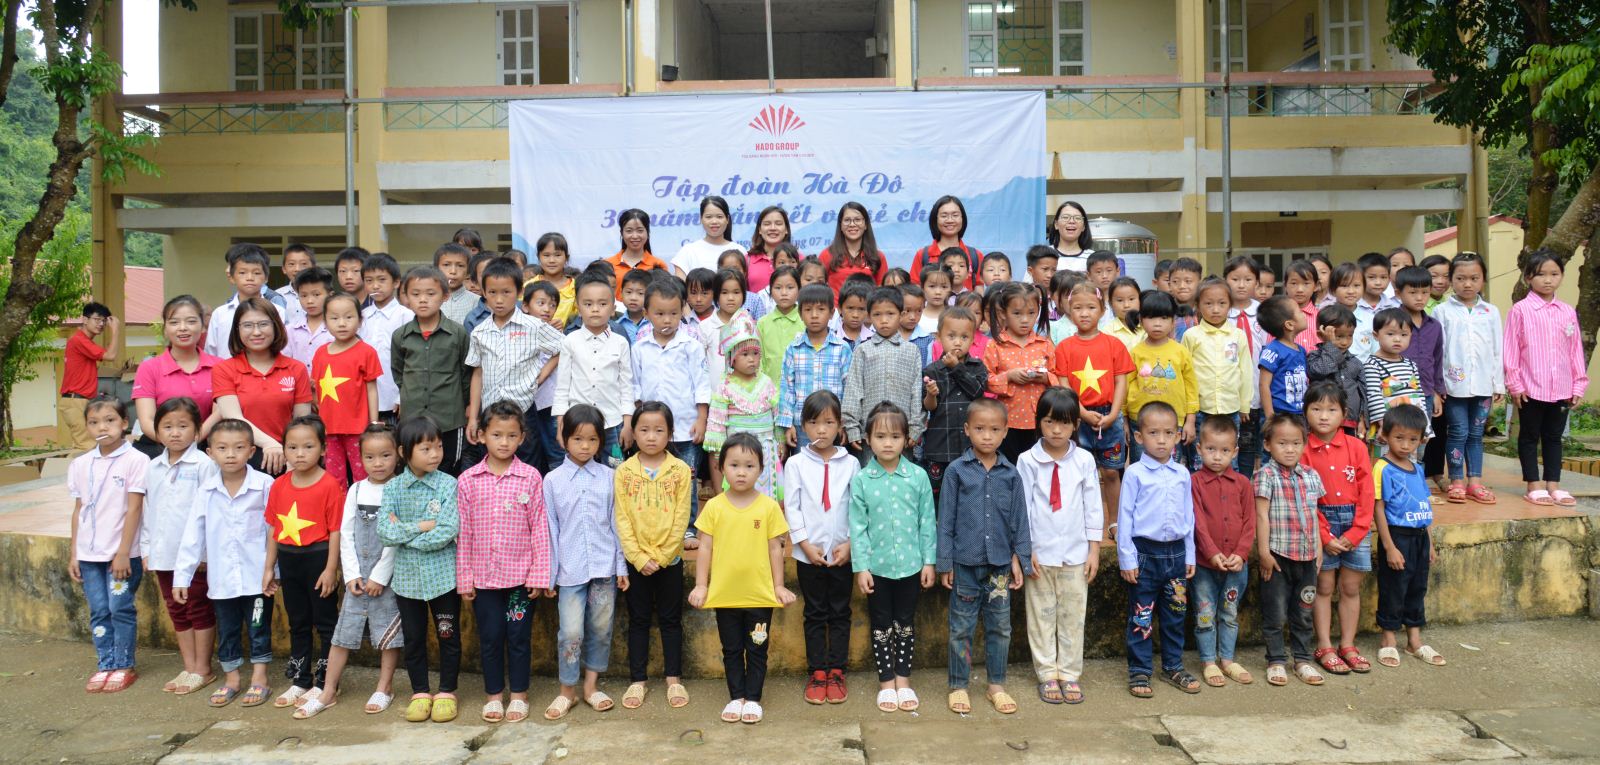 Tập đoàn Hà Đô – 30 năm gắn kết sẻ chia: Trao quà cho đồng bào và học sinh nghèo tại huyện Hà Quảng – Cao Bằng